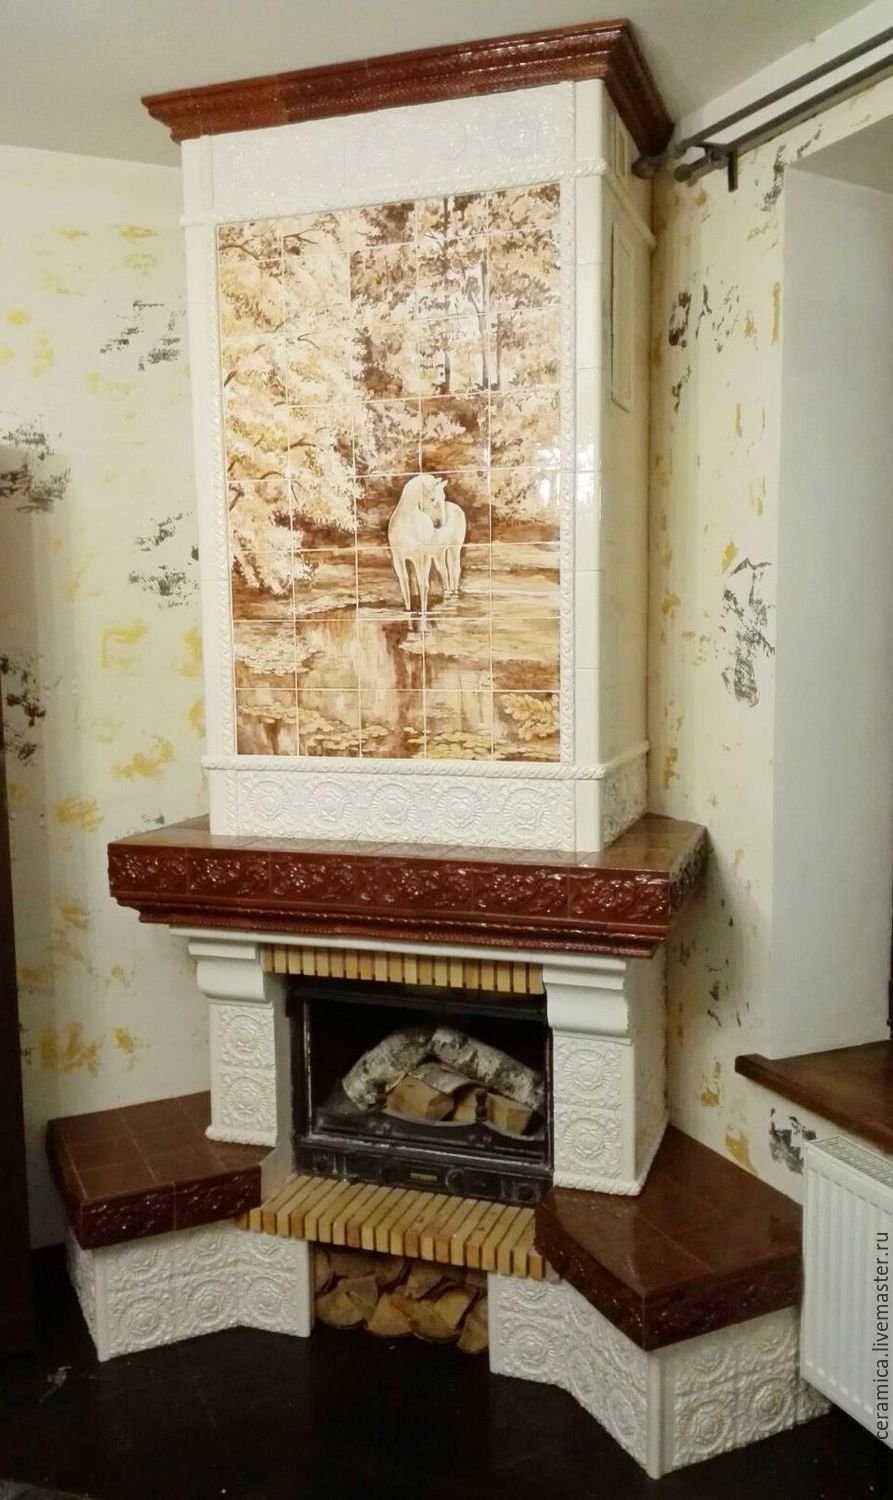 РОСПИСЬ ОБМАНКА. КАМИН. г | Girl bedroom designs, Paint fireplace, Home diy